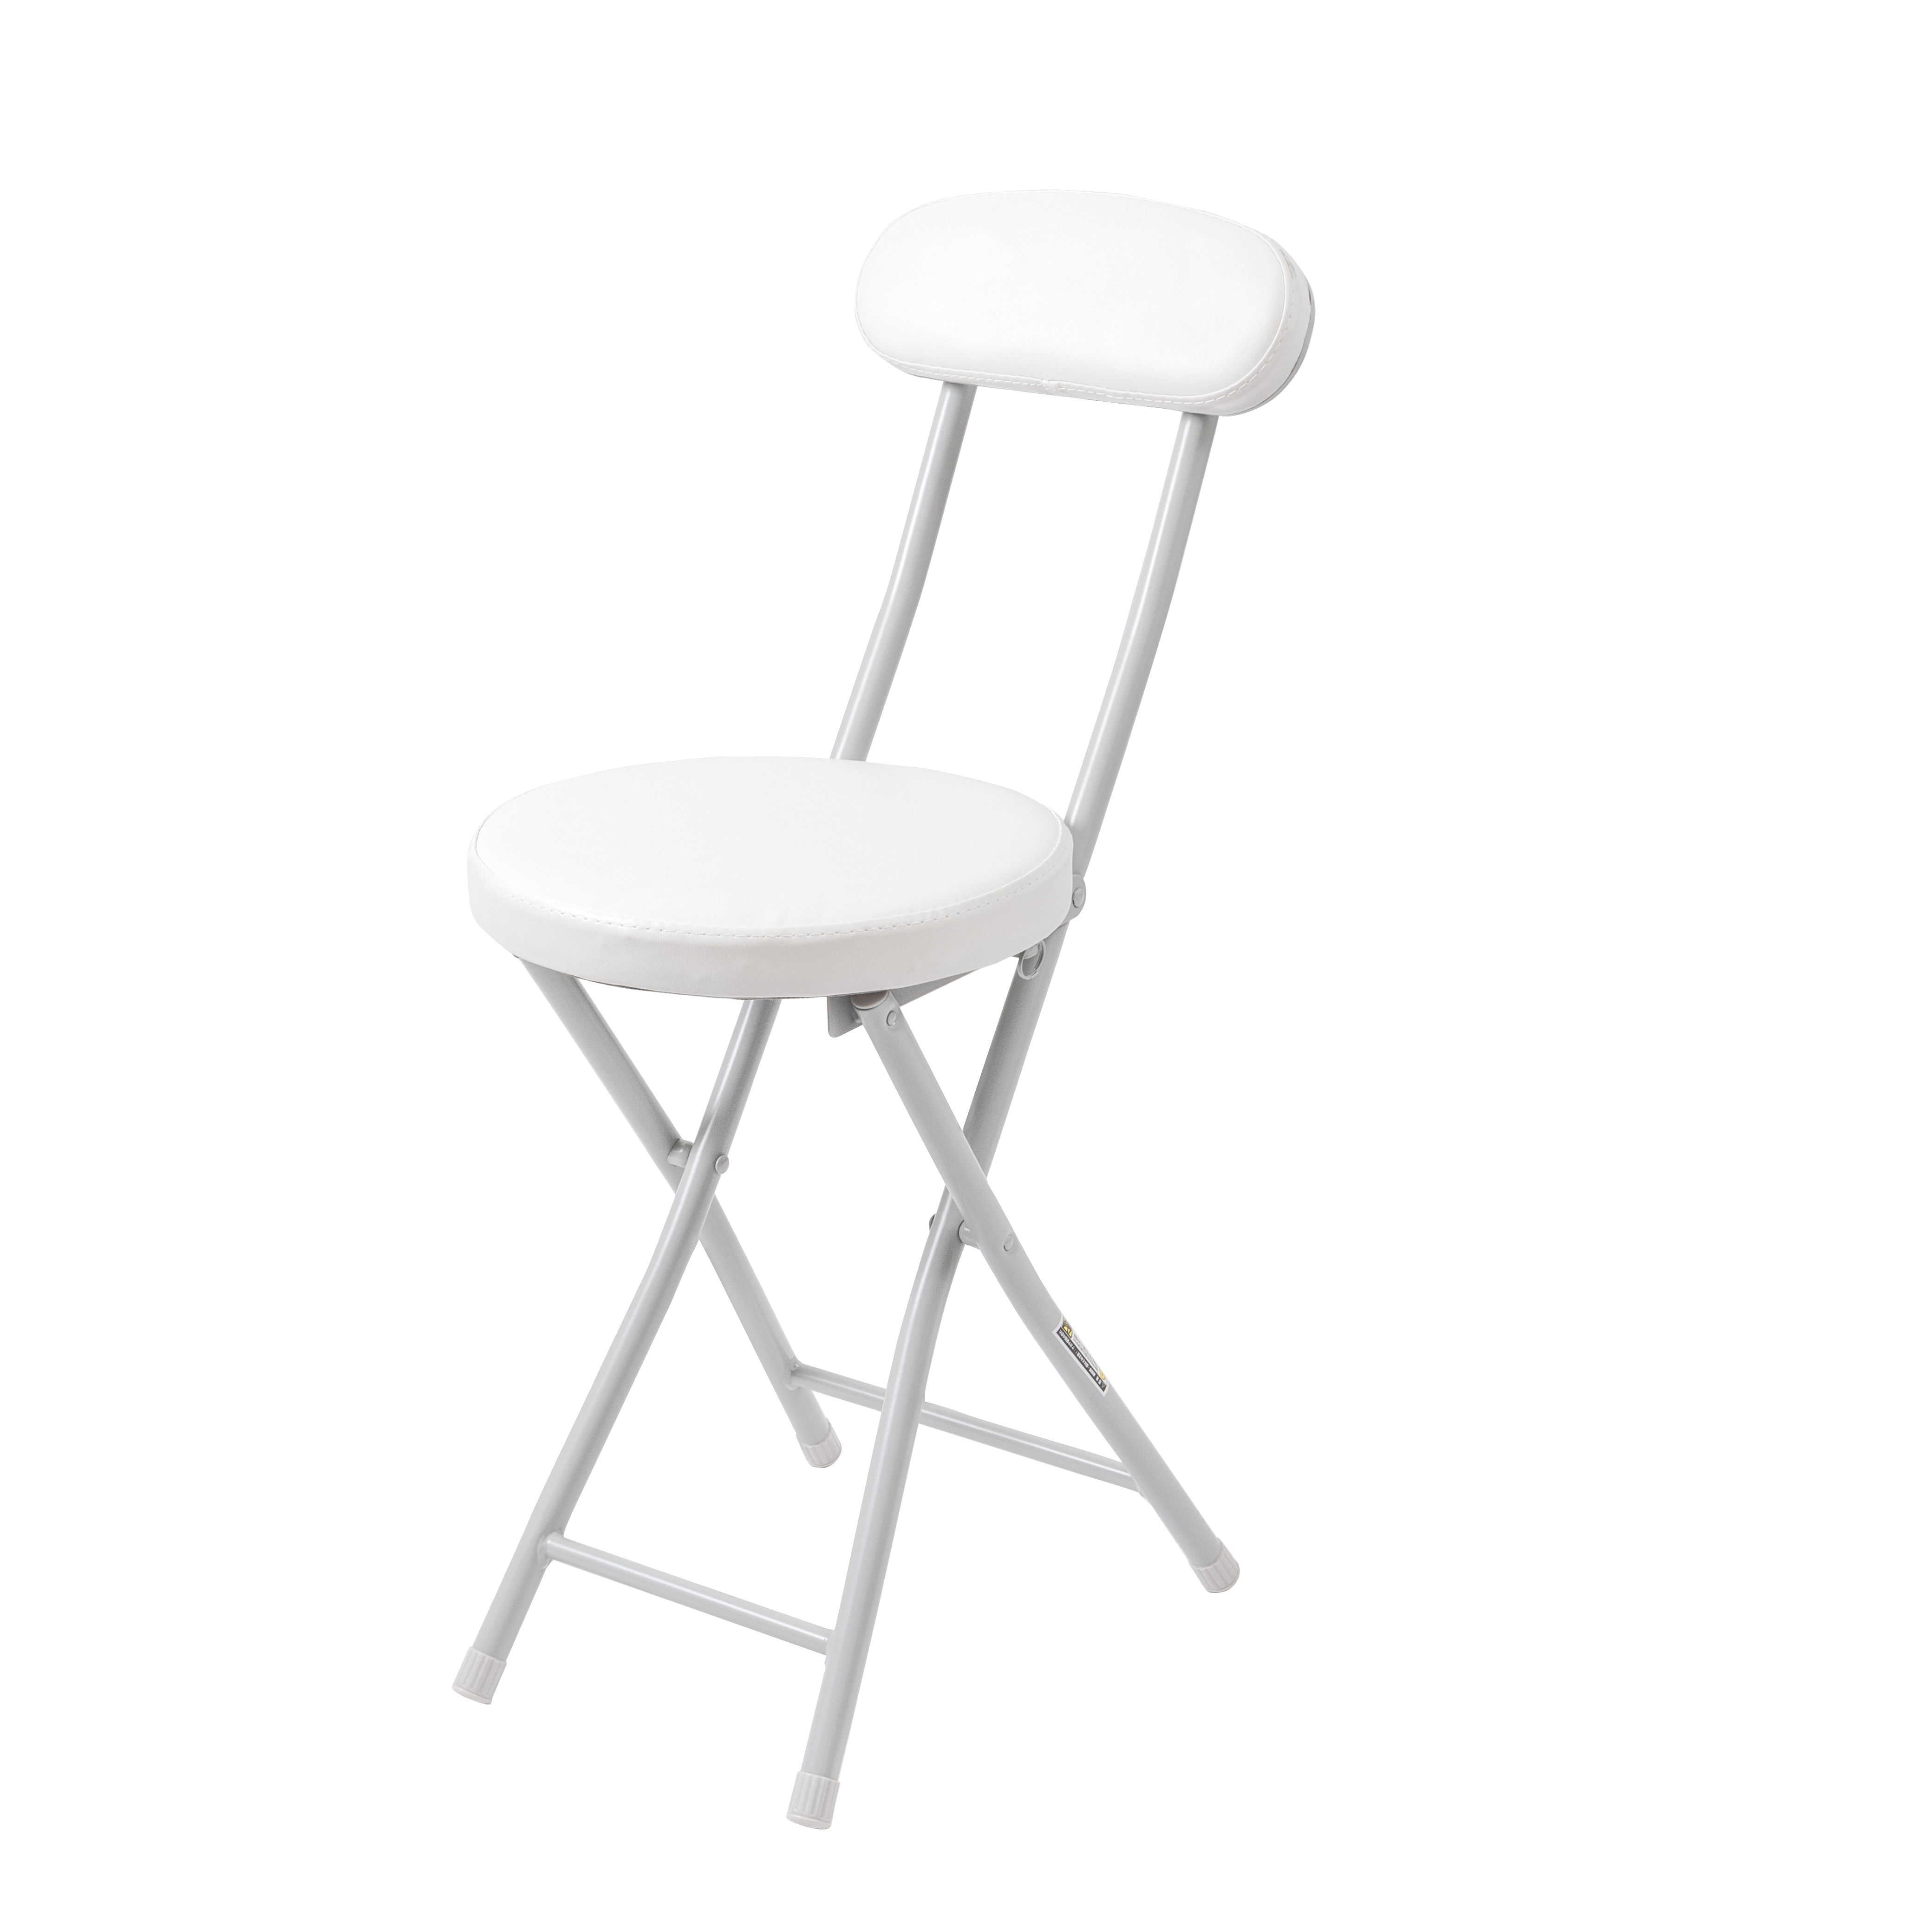 椅子 高さ調節 昇降 スタンディング チェア 低い 台所 パイプ椅子 姿勢